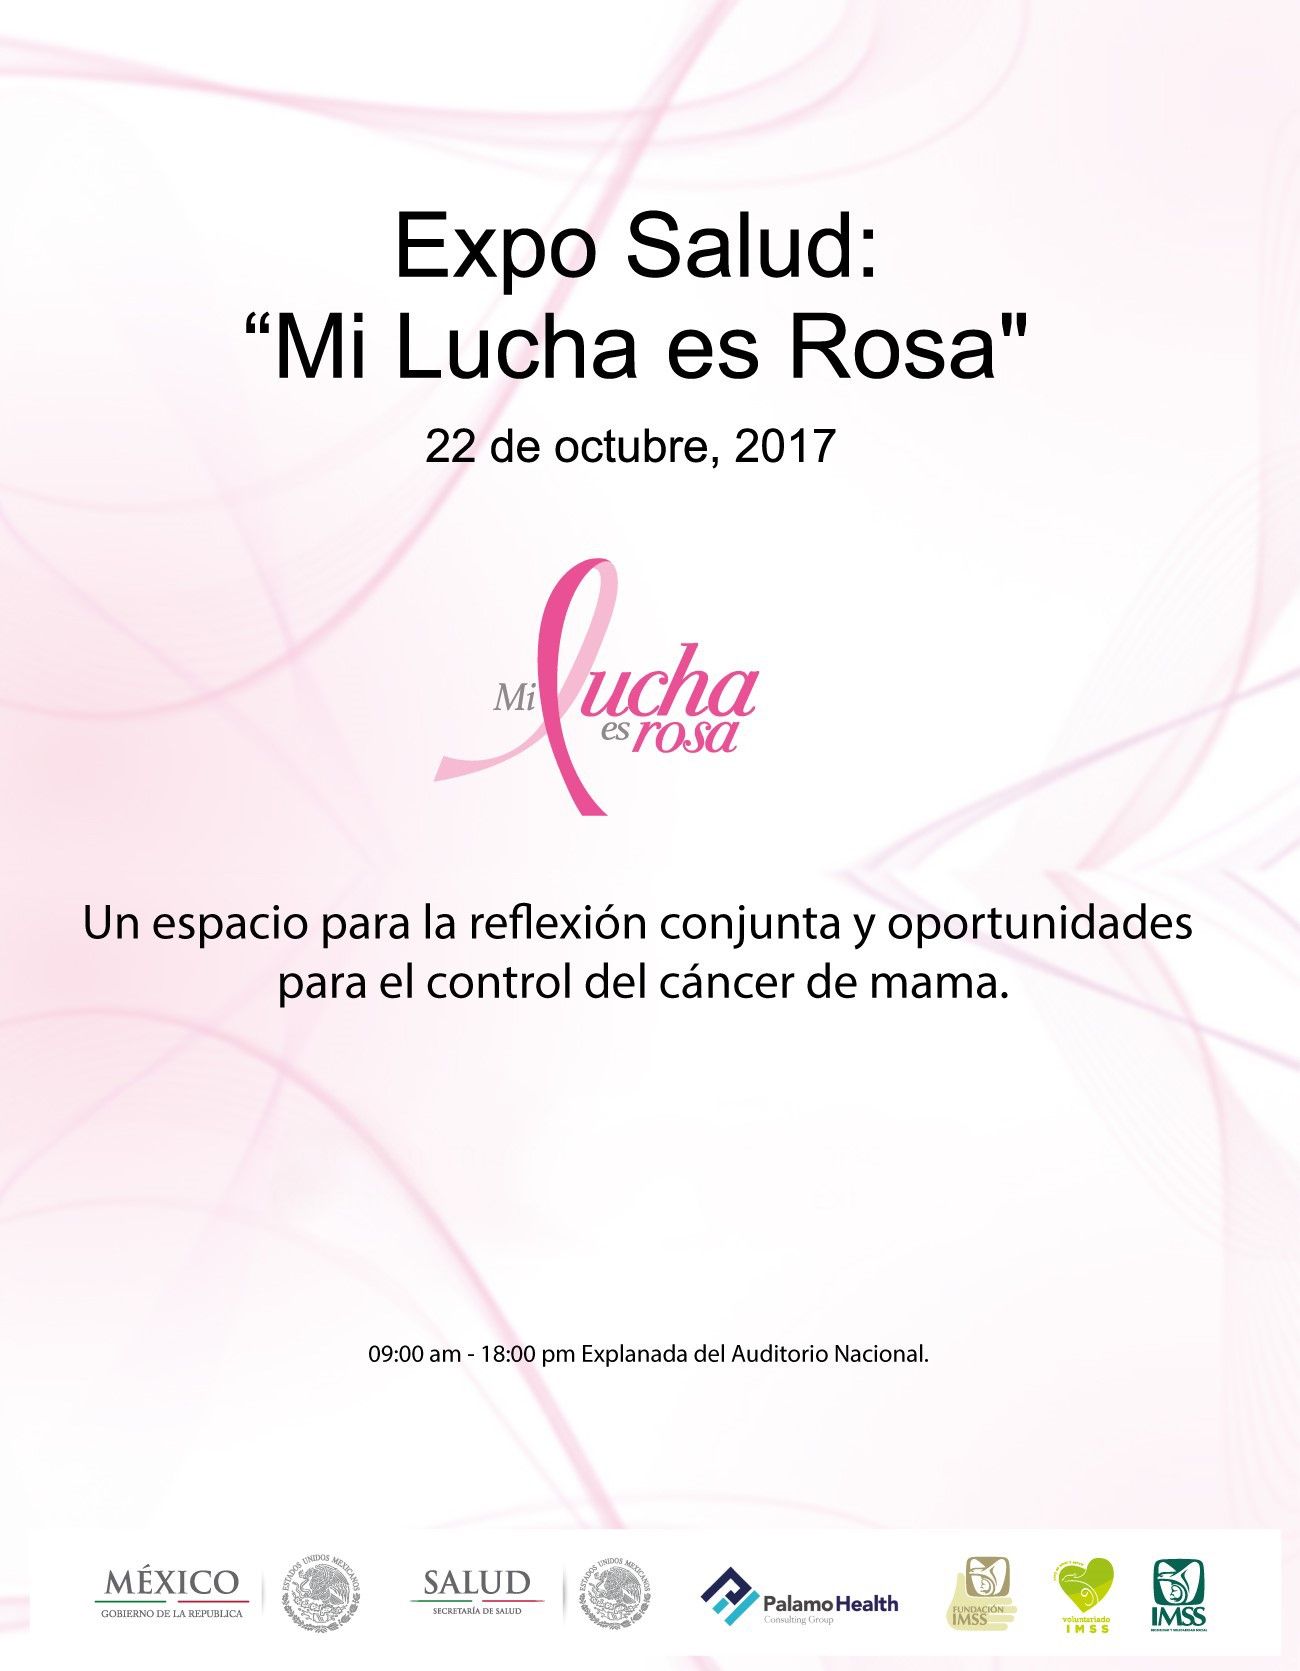 Expo Salud reunirá por primera vez a todo el Sistema Nacional de Salud en la lucha contra el cáncer de mama